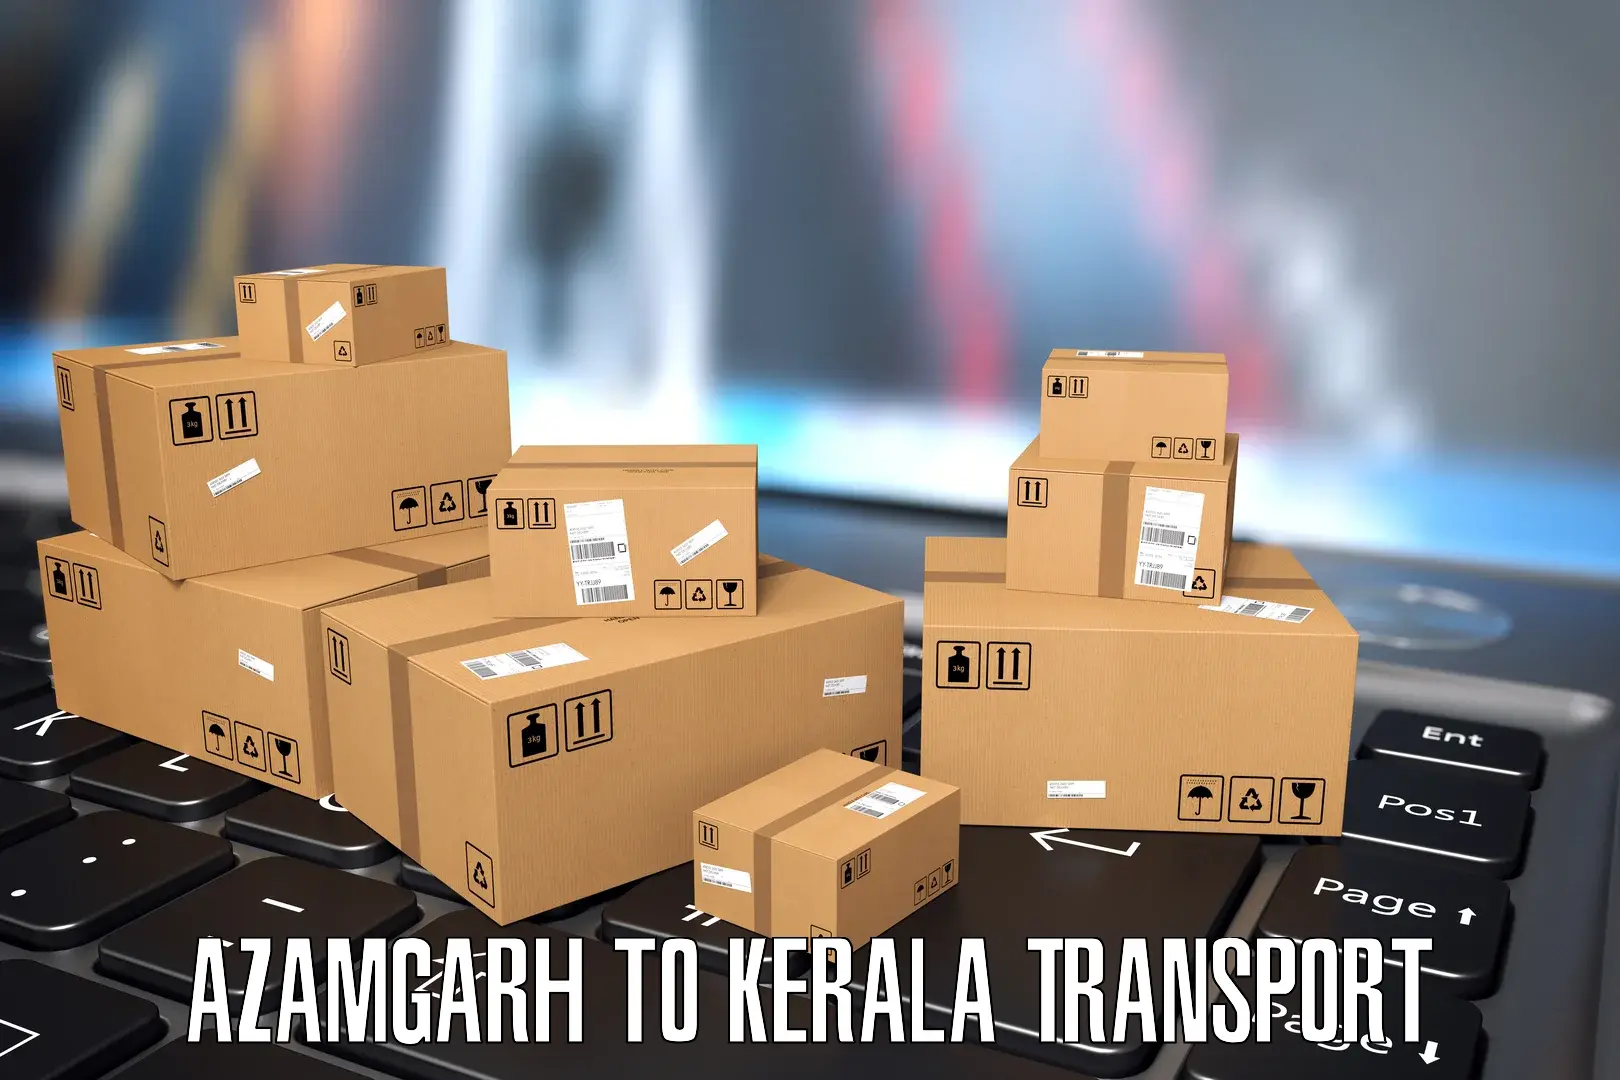 Furniture transport service in Azamgarh to Calicut